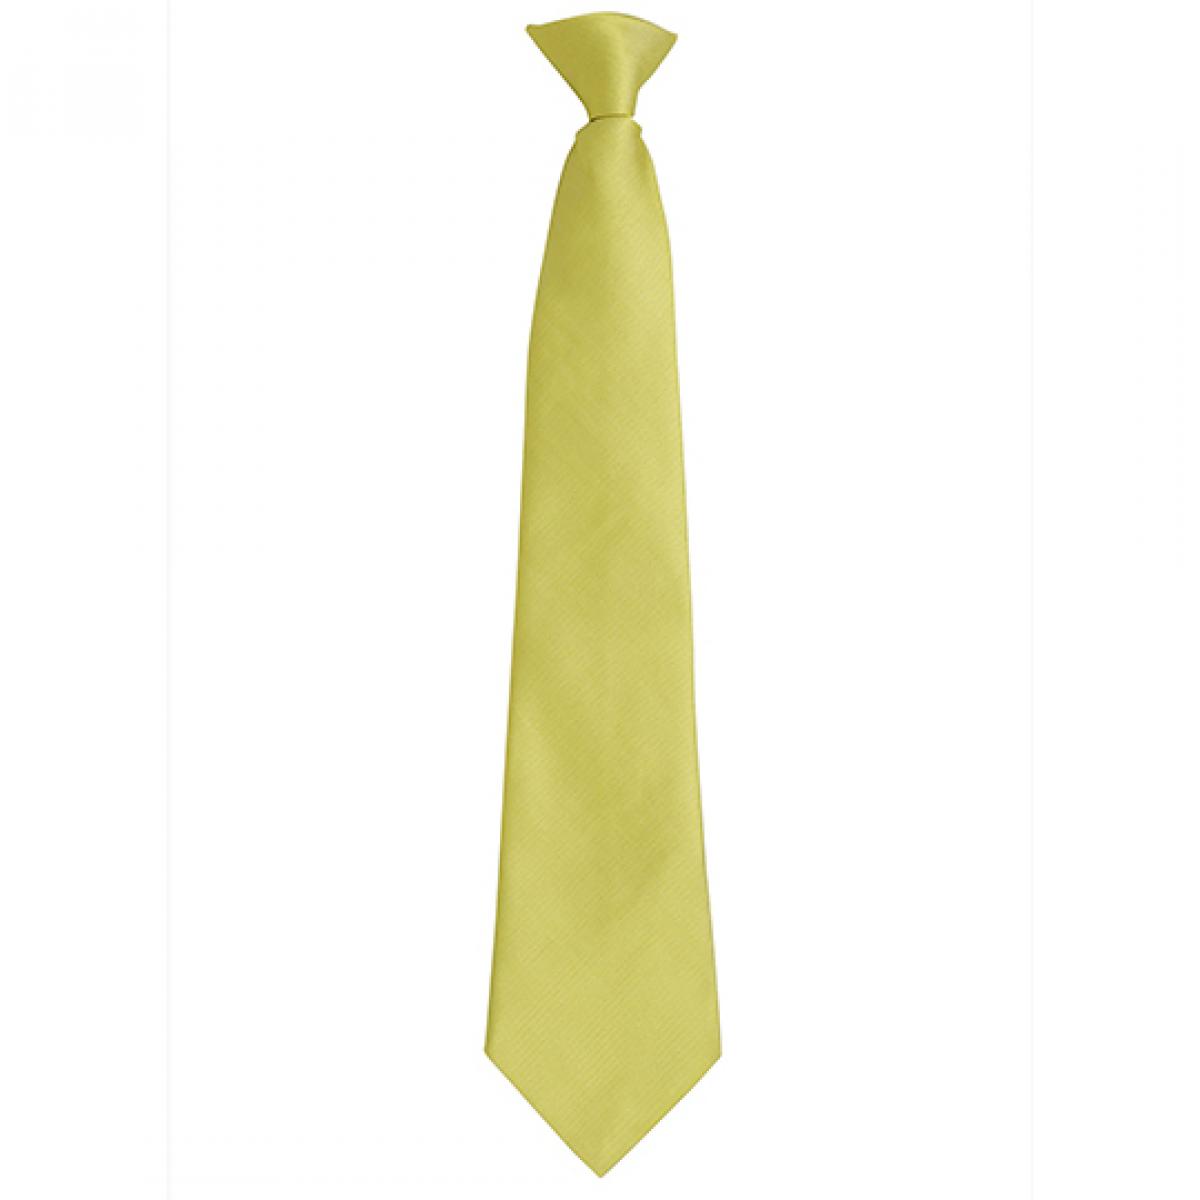 Hersteller: Premier Workwear Herstellernummer: PR785 Artikelbezeichnung: ´Colours´ Fashion Clip Tie Farbe: Lime (ca. Pantone 617C)